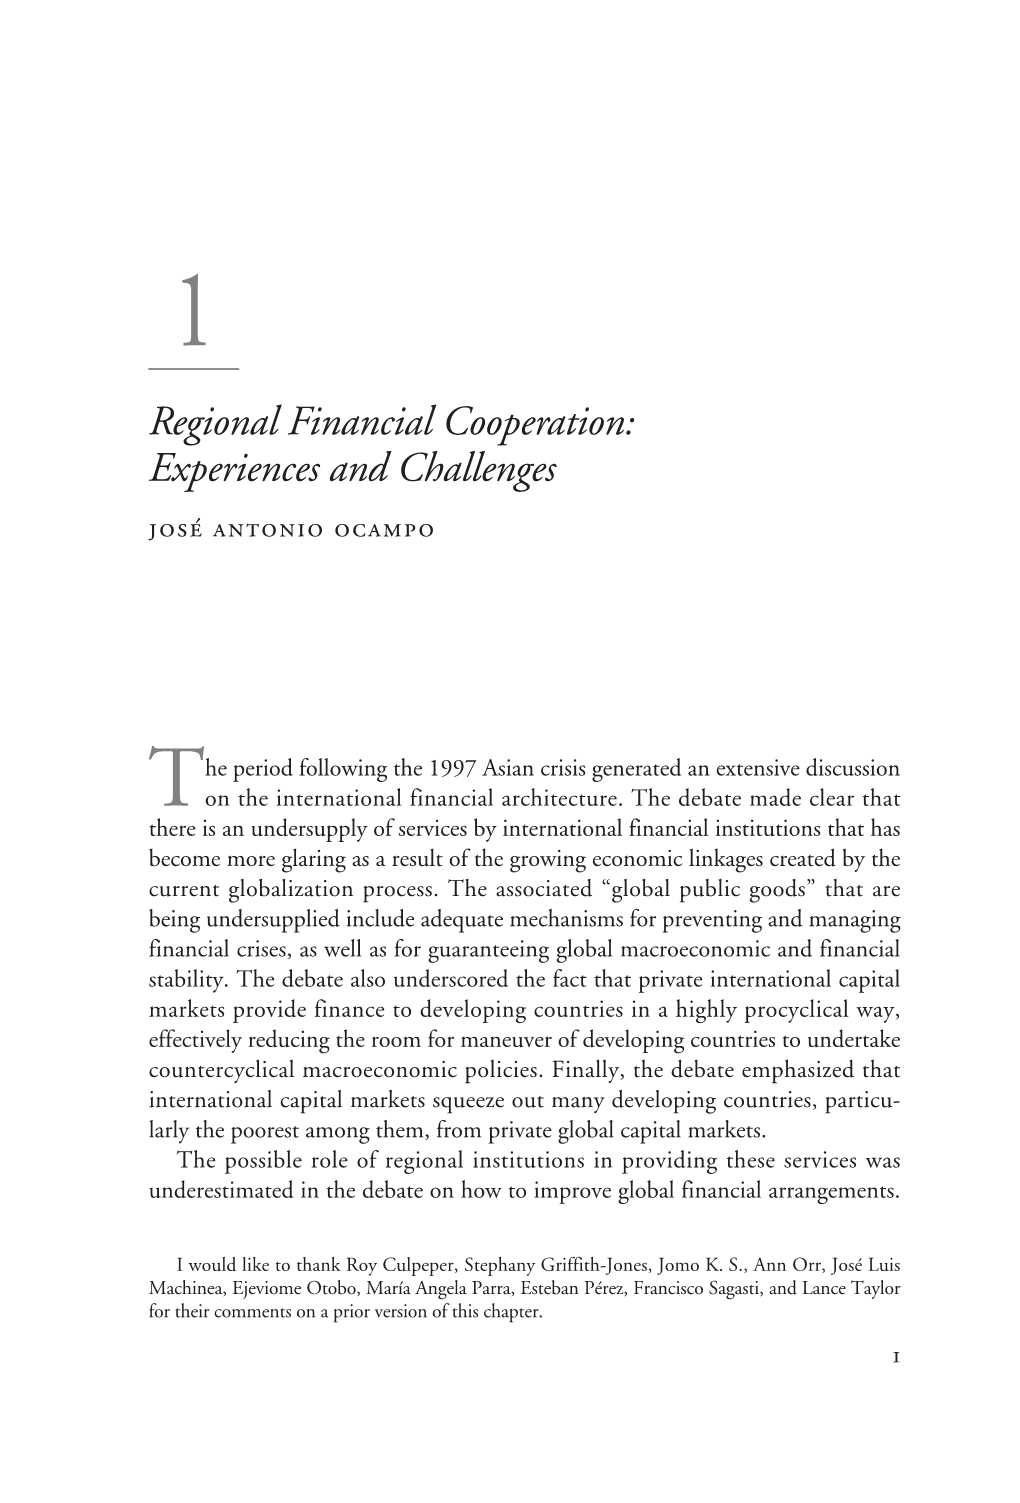 Regional Financial Cooperation: Experiences and Challenges José Antonio Ocampo